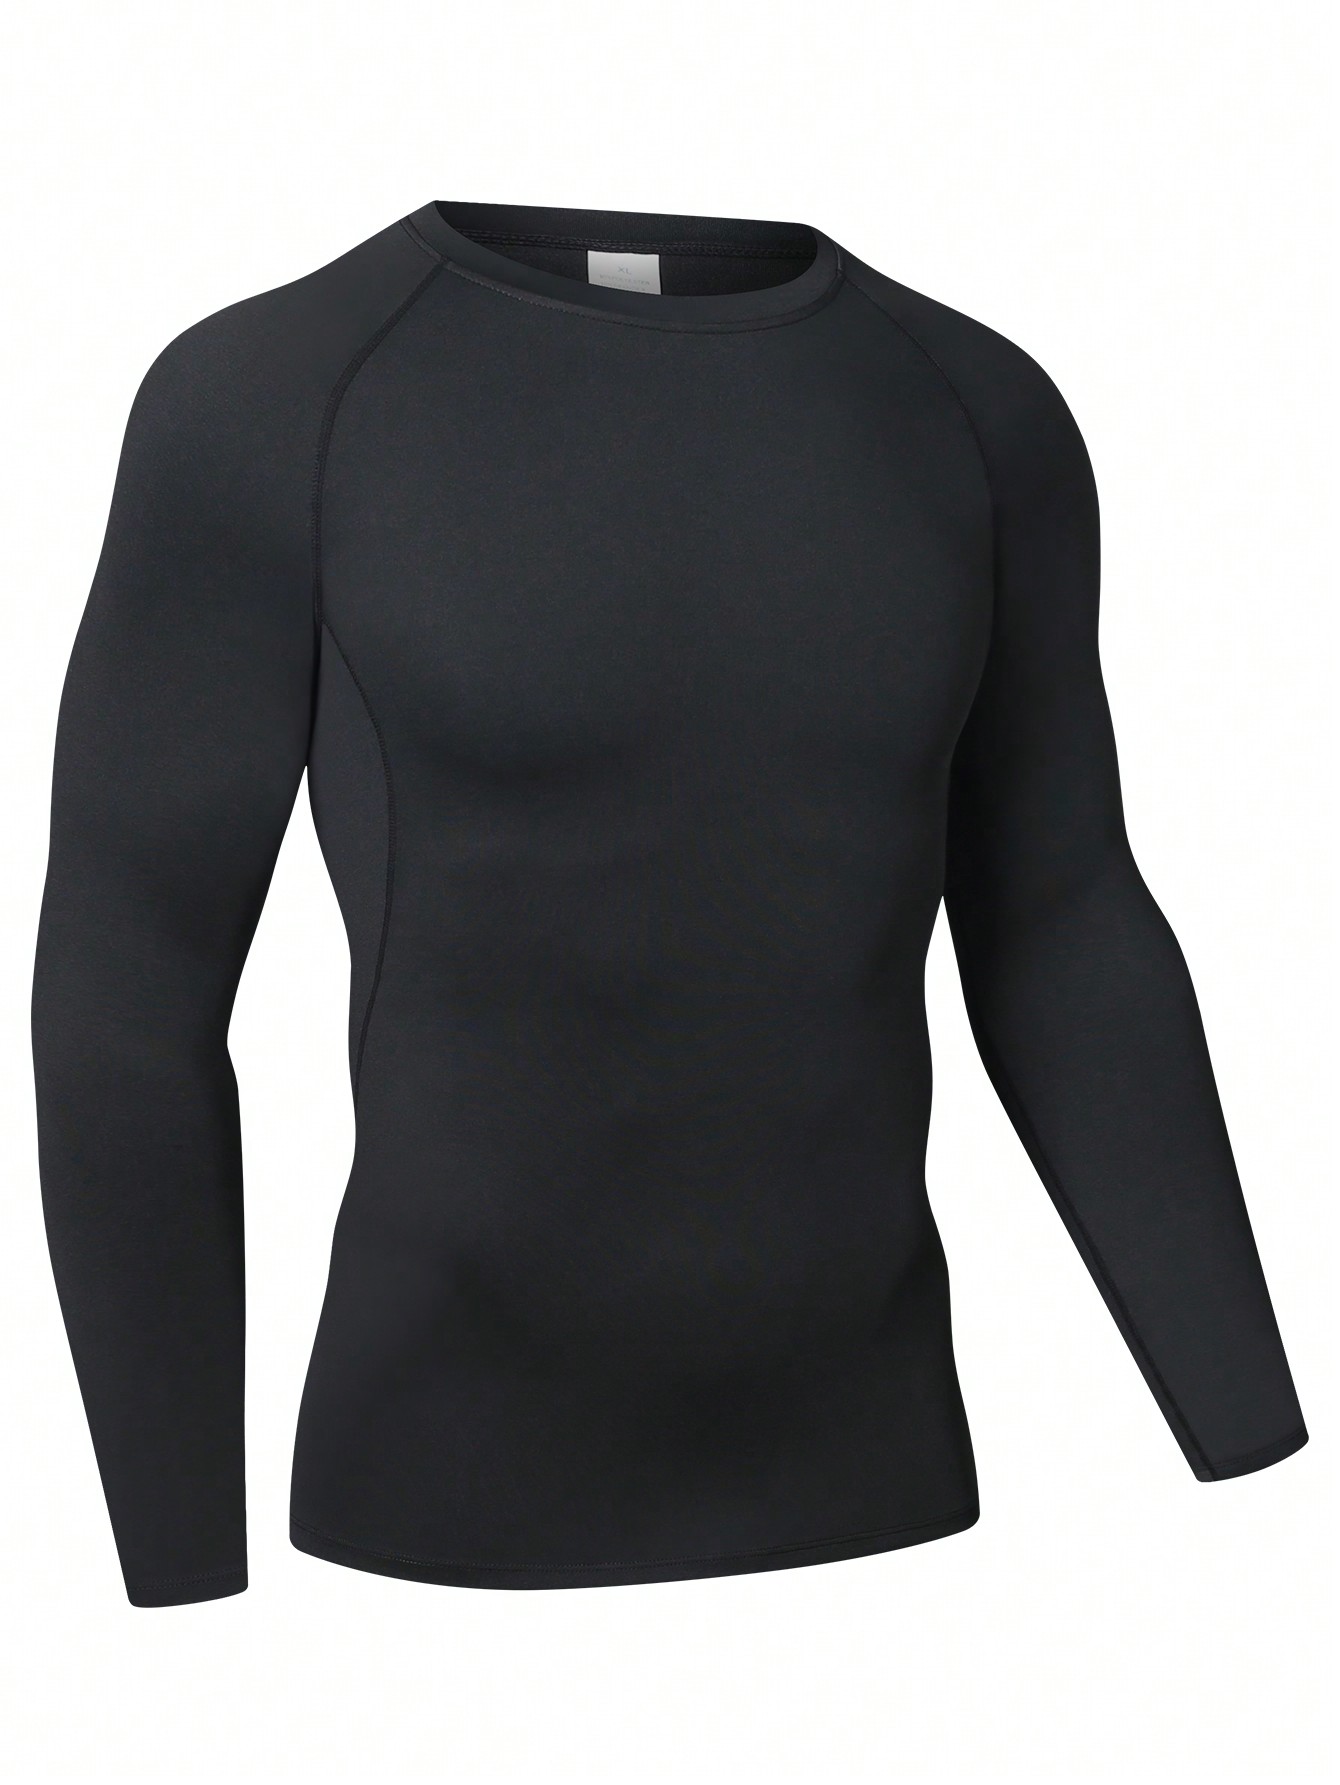 Мужская эластичная компрессионная рубашка для фитнеса с длинными рукавами, черный фото